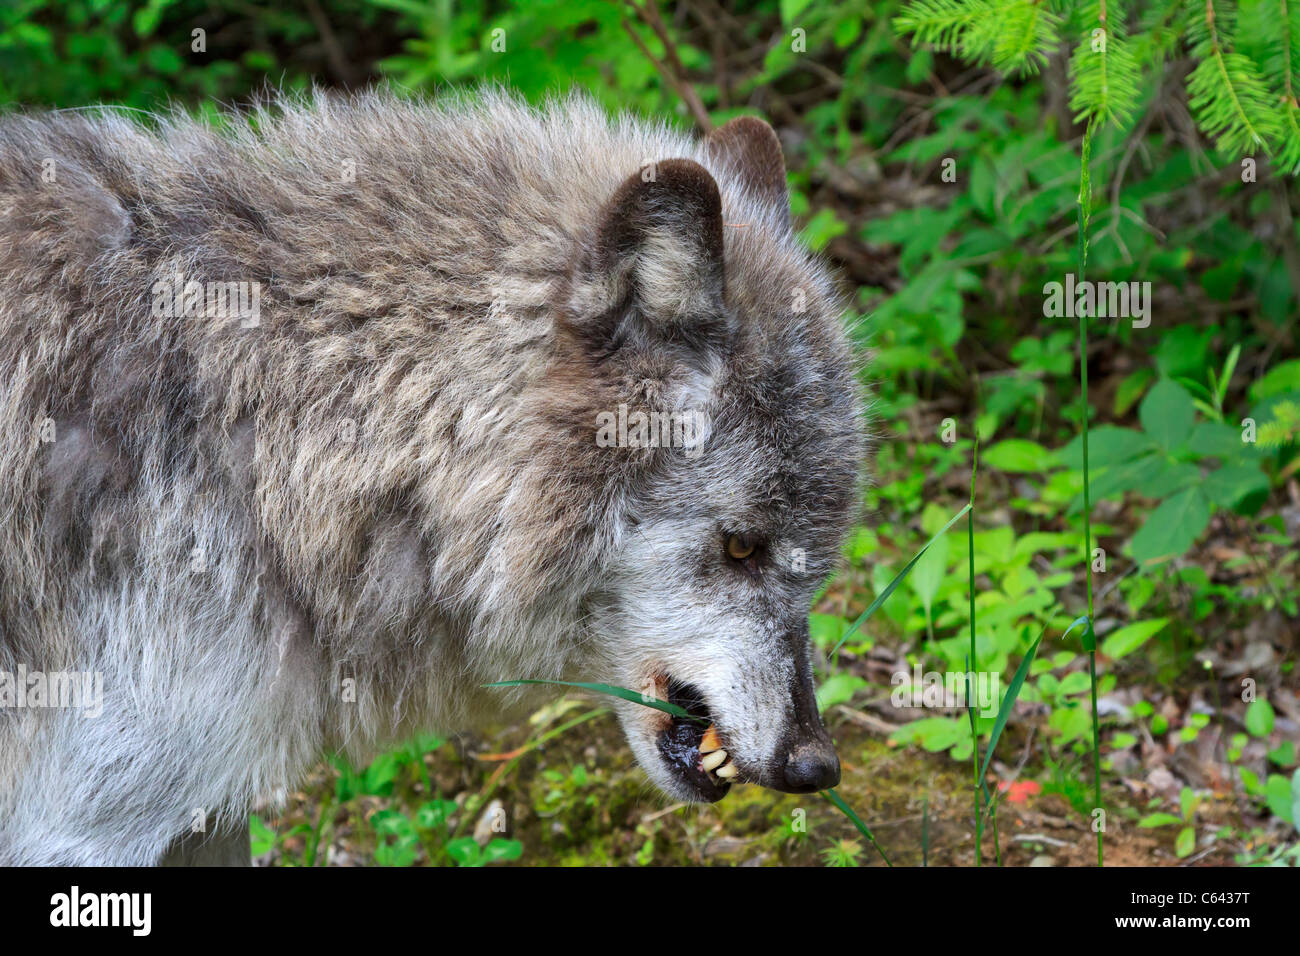 Lupo grigio, Canis lupus, mangiare erba. Columbia Valley, British Columbia, Canada. Lupi possono mangiare erba per aiutare nella digestione. Foto Stock